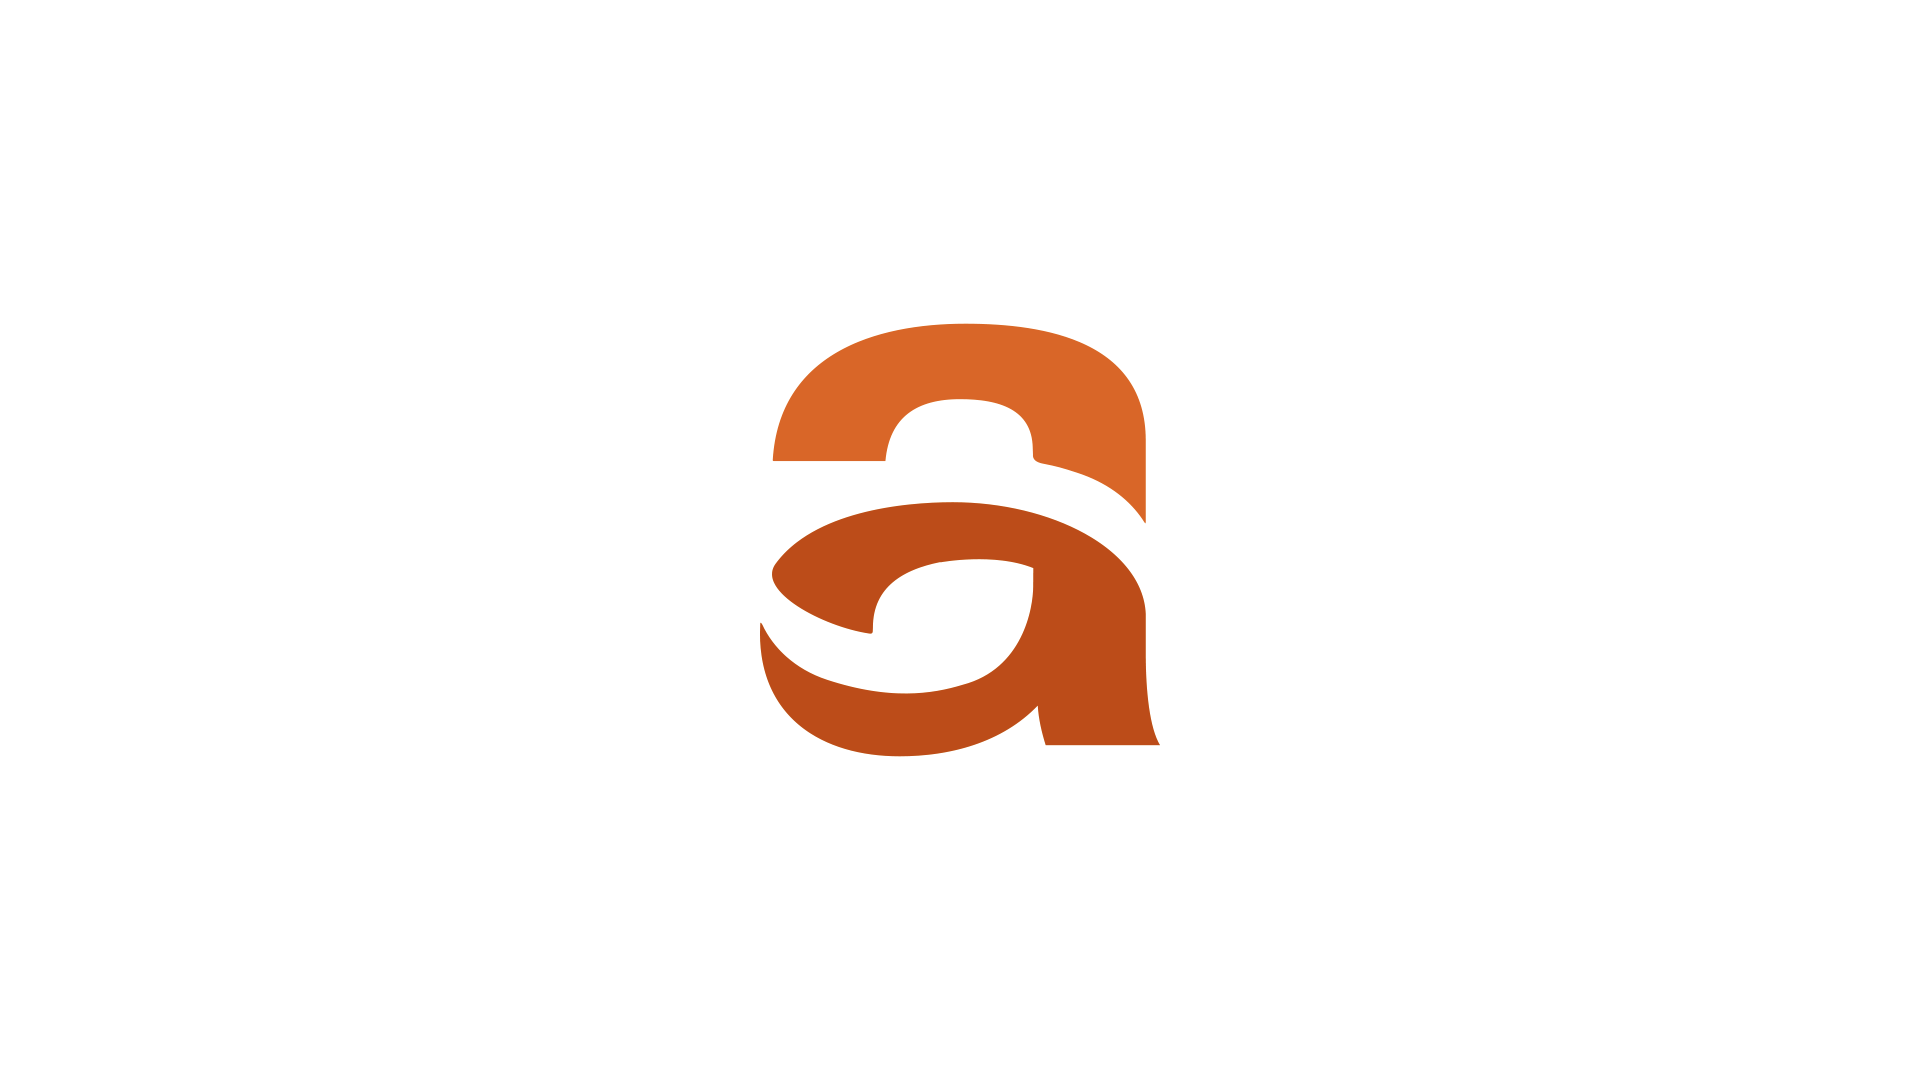 Lettering Logotipo "A" em tons de laranja, para a marca Aspuna